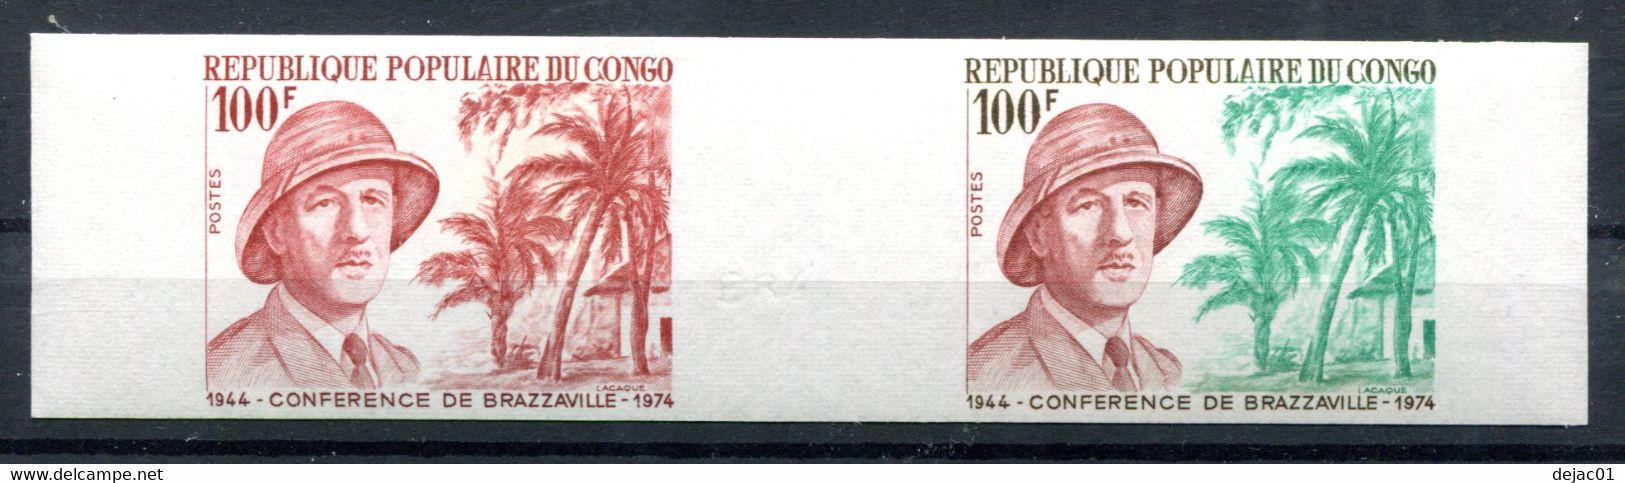 Thème Général De Gaulle - Congo - Yvert 355  - Paire Essai De Couleur Neuf Xxx Non Dentelé - Lot 306 - De Gaulle (General)